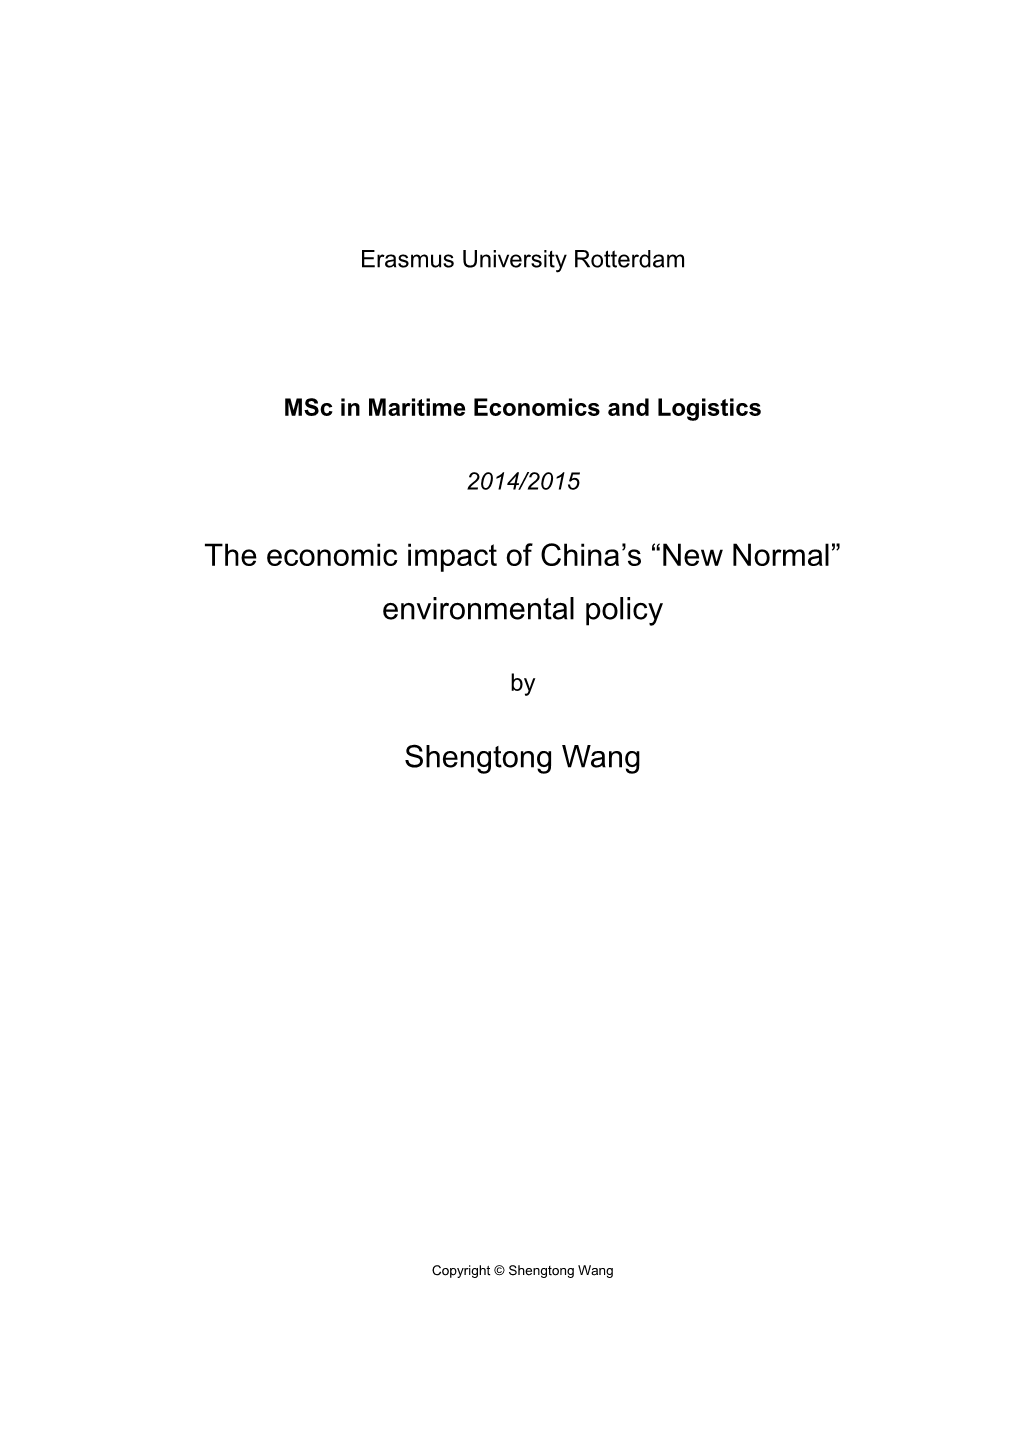 The Economic Impact of China's “New Normal” Environmental Policy Shengtong Wang